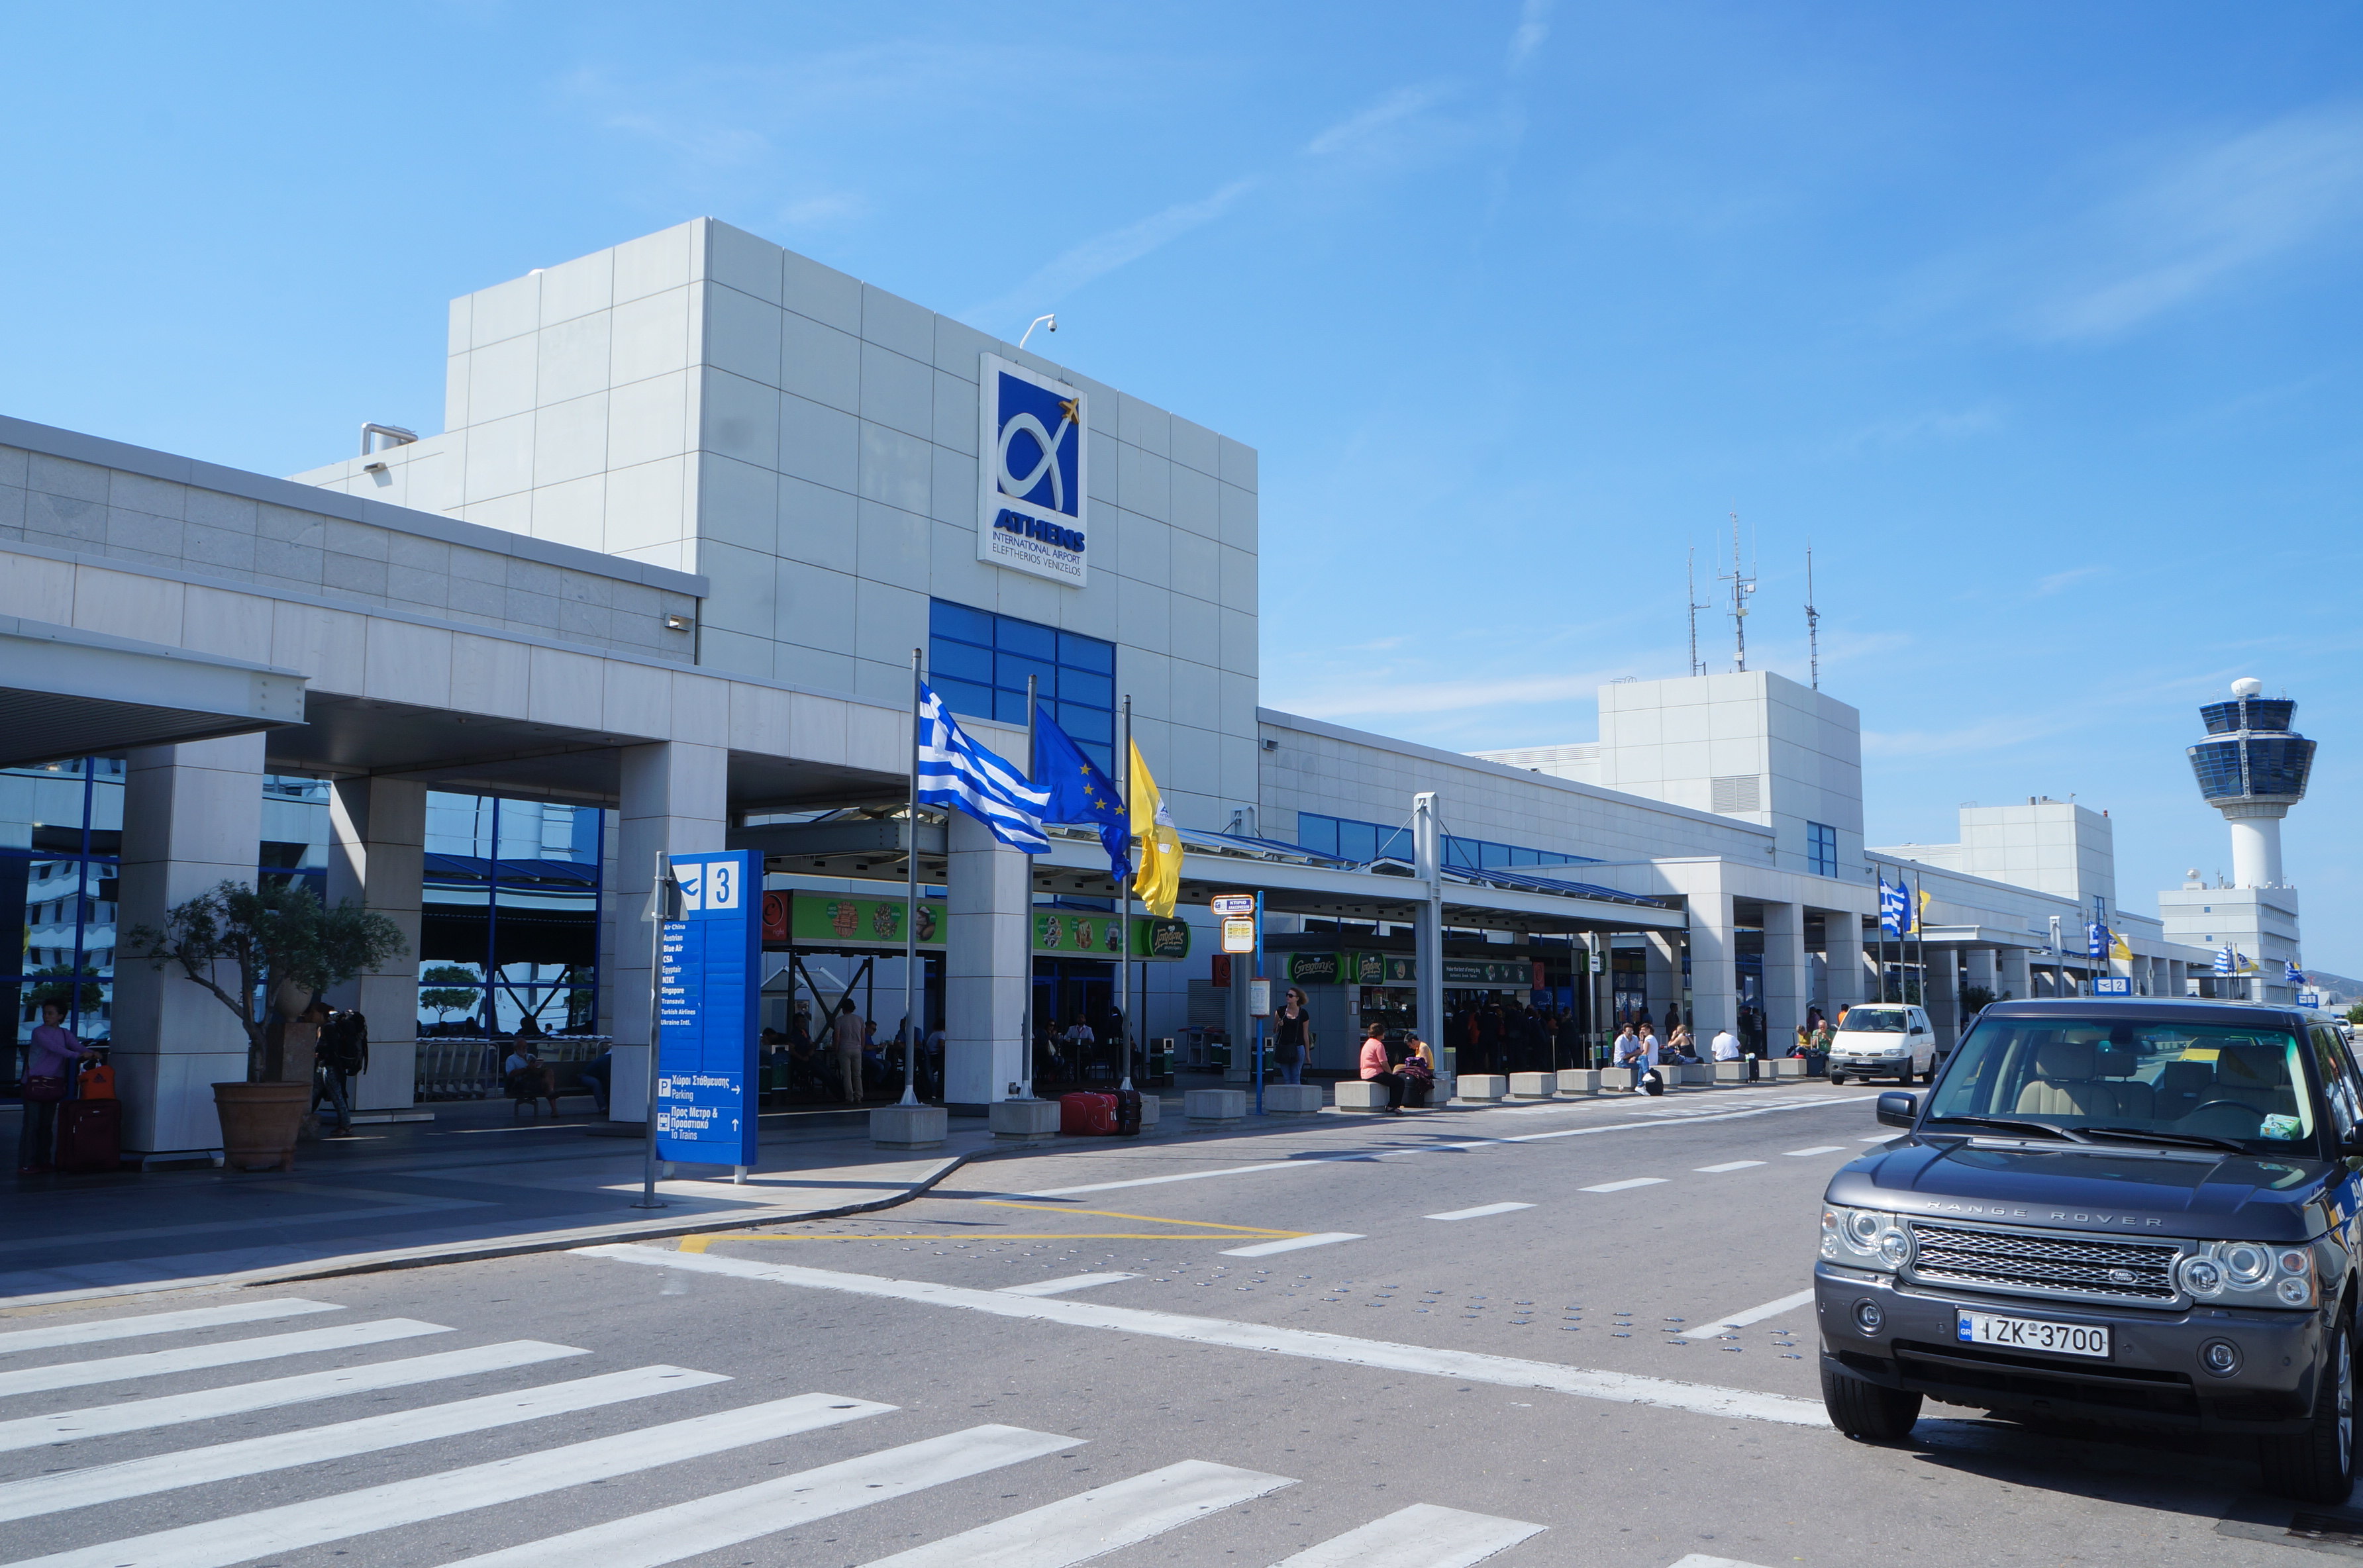 希腊科孚岛机场图片